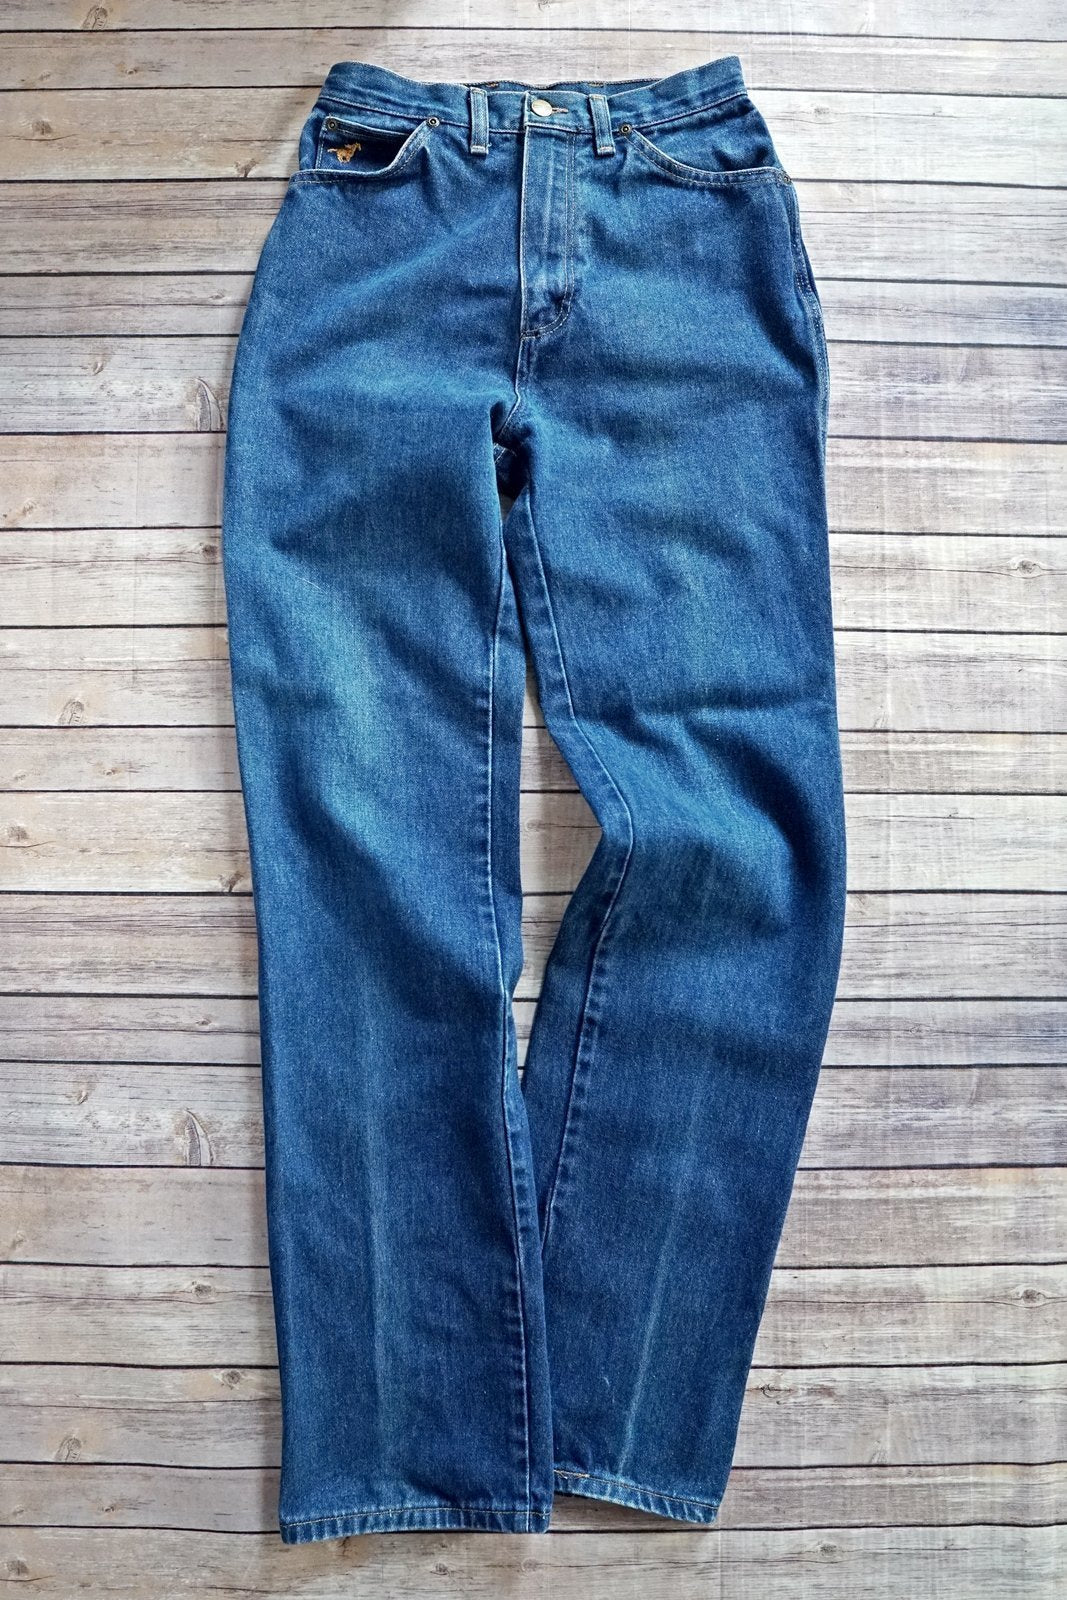 Vintage Wrangler Jeans - 27